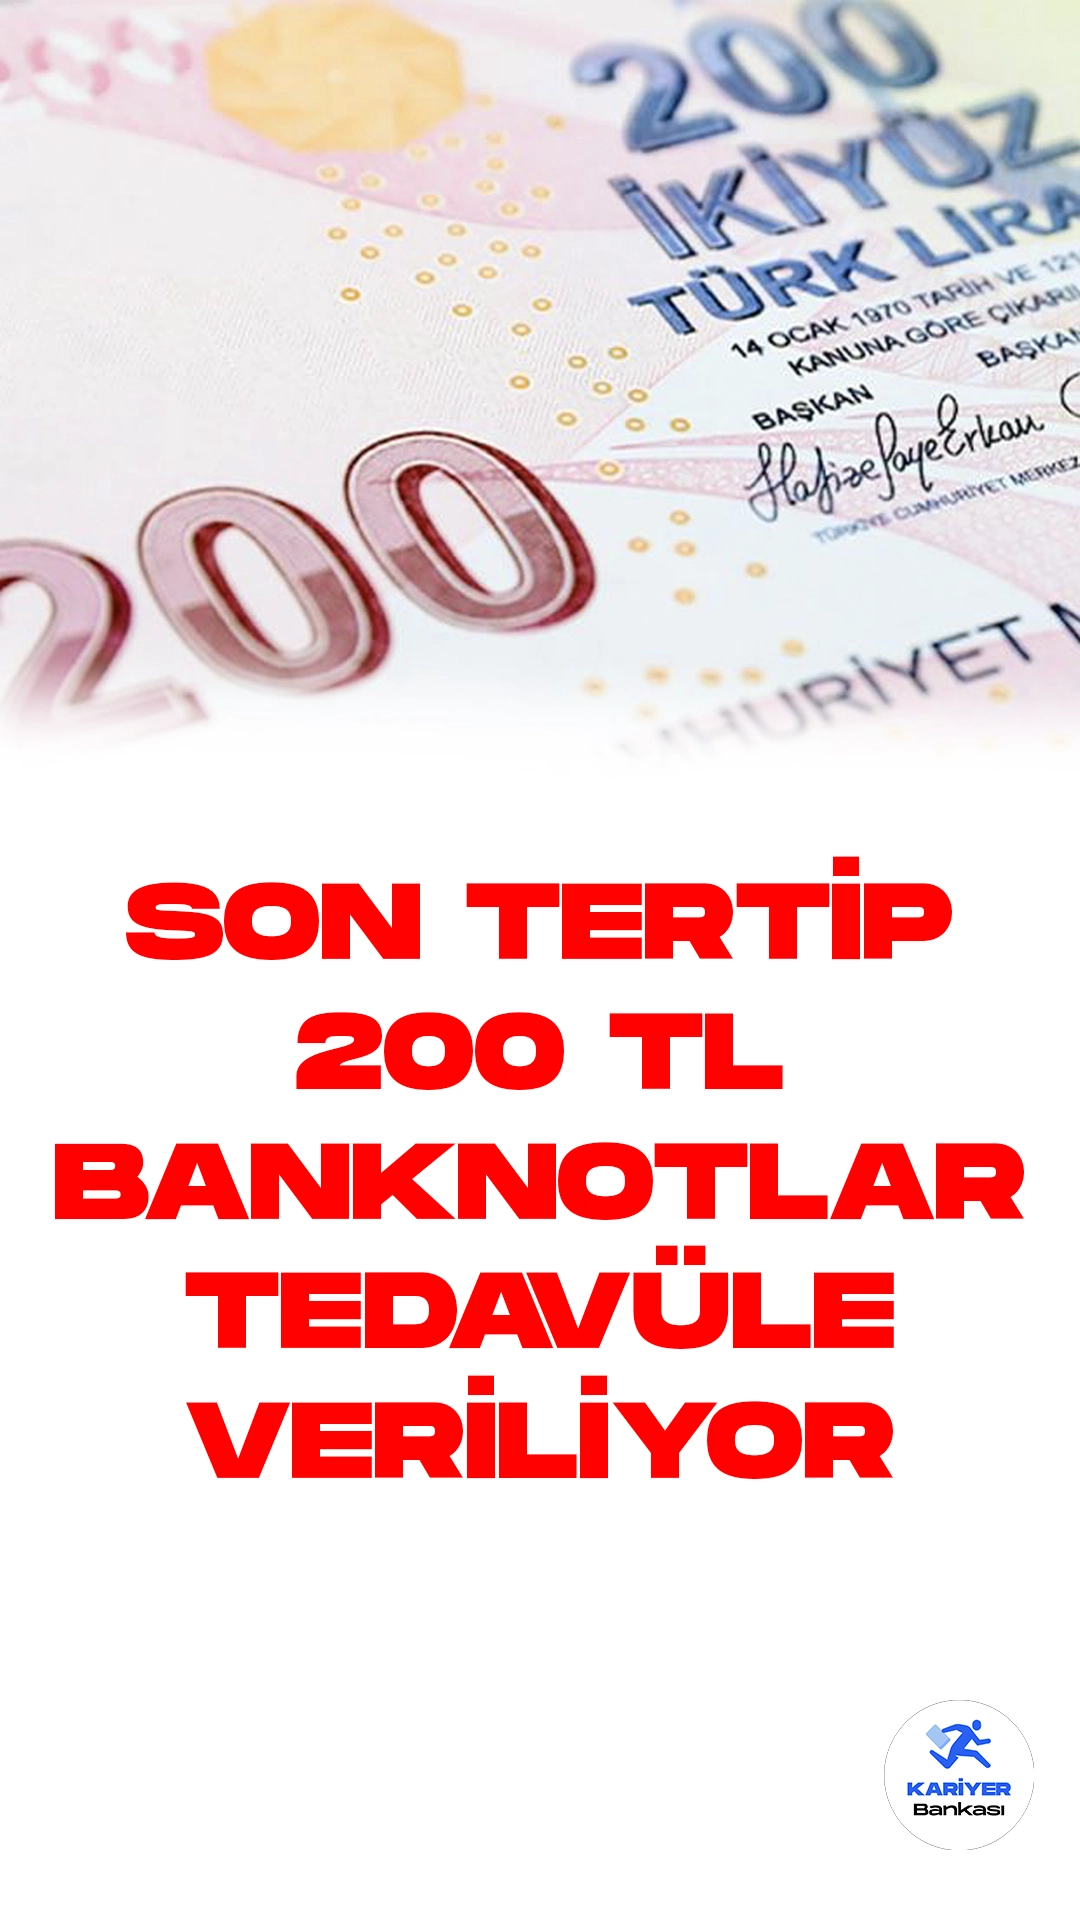 TCMB, Son Tertip 200 TL Banknotları Tedavüle Alıyor.Türkiye Cumhuriyet Merkez Bankası (TCMB), E9 Emisyon Grubu VII. tertip 200 TL banknotların bugünden itibaren tedavüle verileceğini duyurdu.